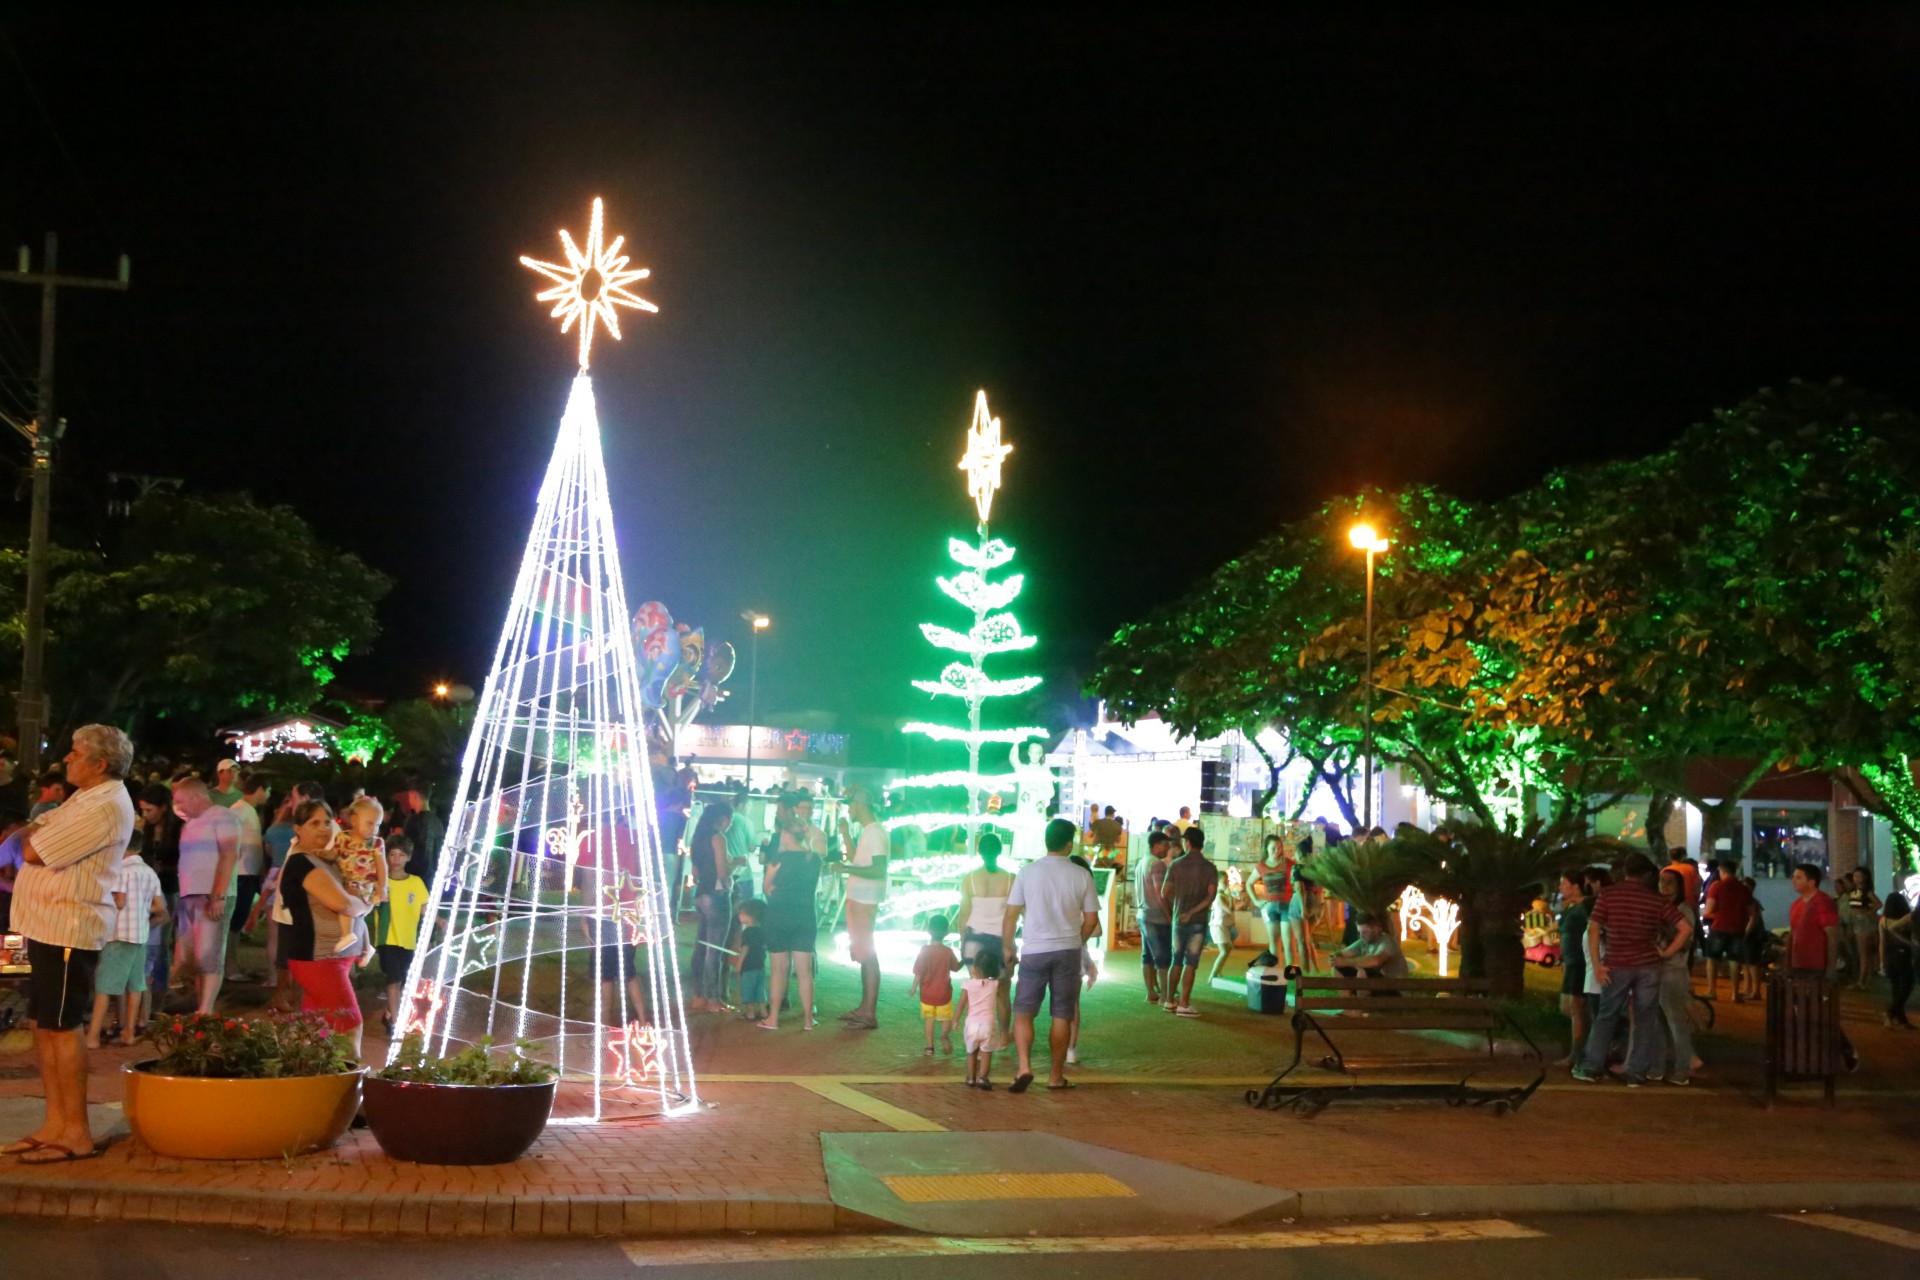 Atrações culturais vão movimentar o Natal Iluminado de Itaipulândia neste final de semana